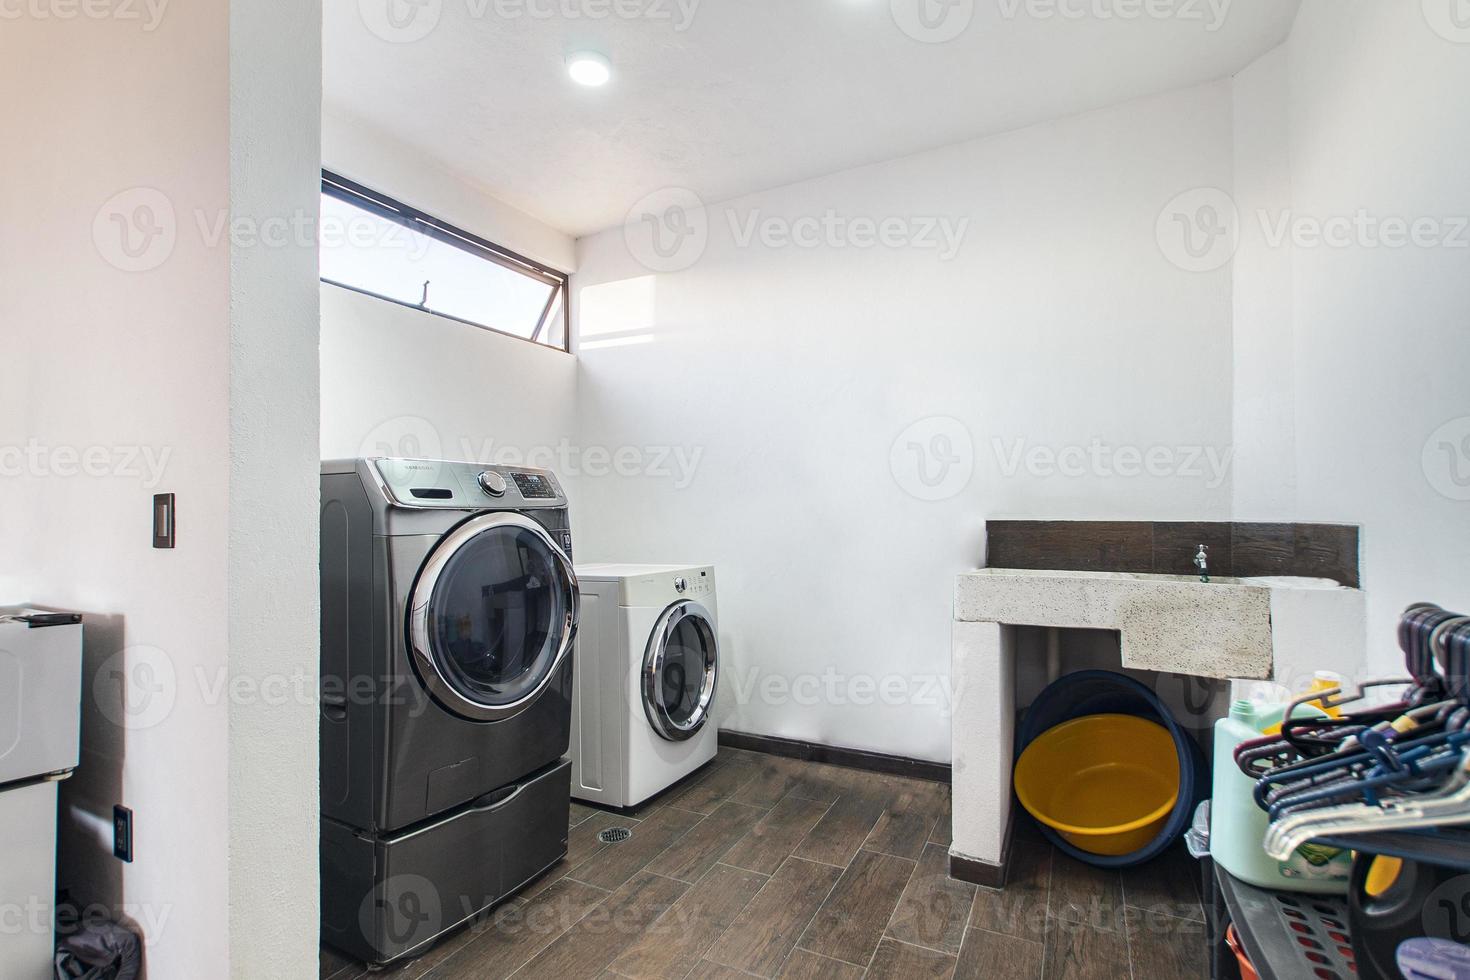 cuarto de lavado, con lavadora, secadora, zona de detergentes, pileta de lavado de manos, foto